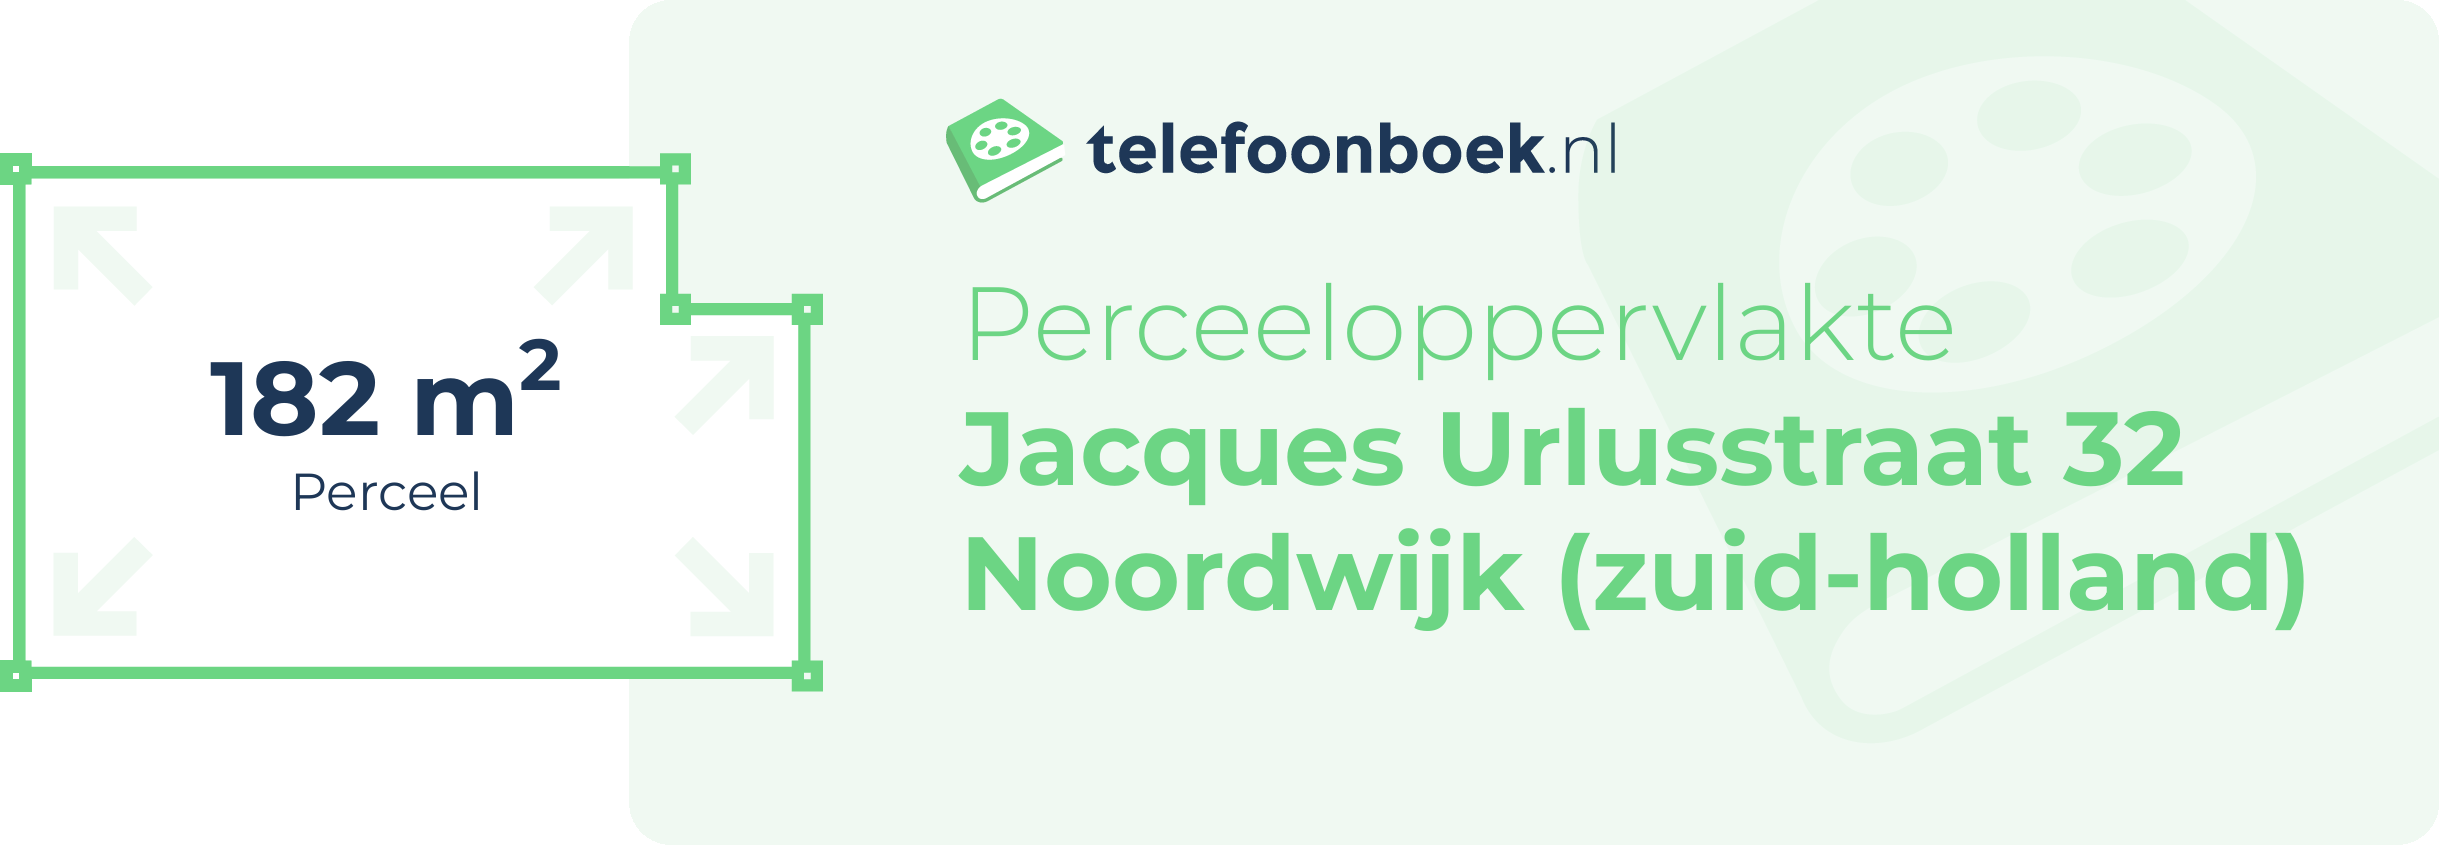 Perceeloppervlakte Jacques Urlusstraat 32 Noordwijk (Zuid-Holland)